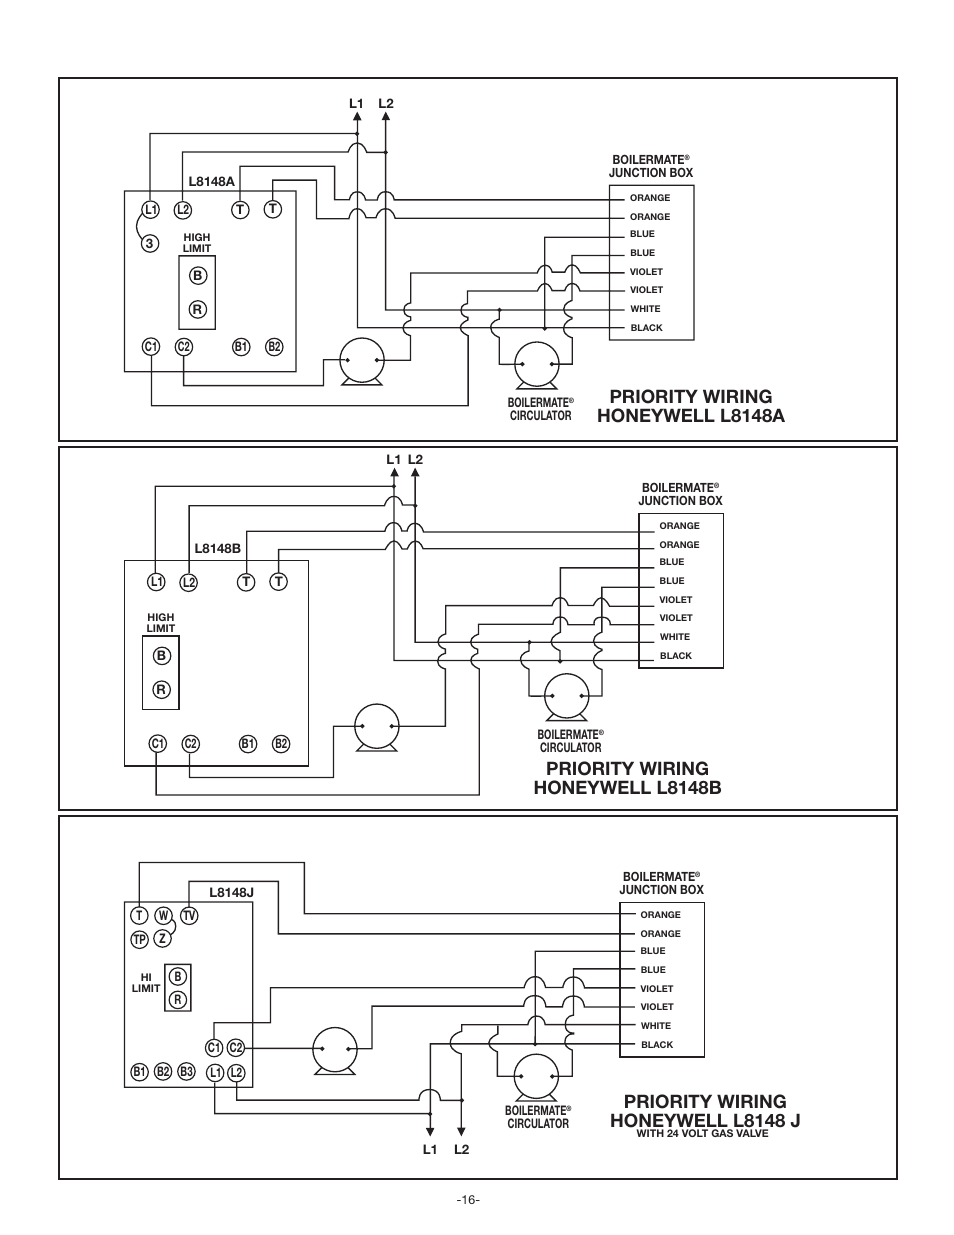 wellxtrol junction box wiring diagram